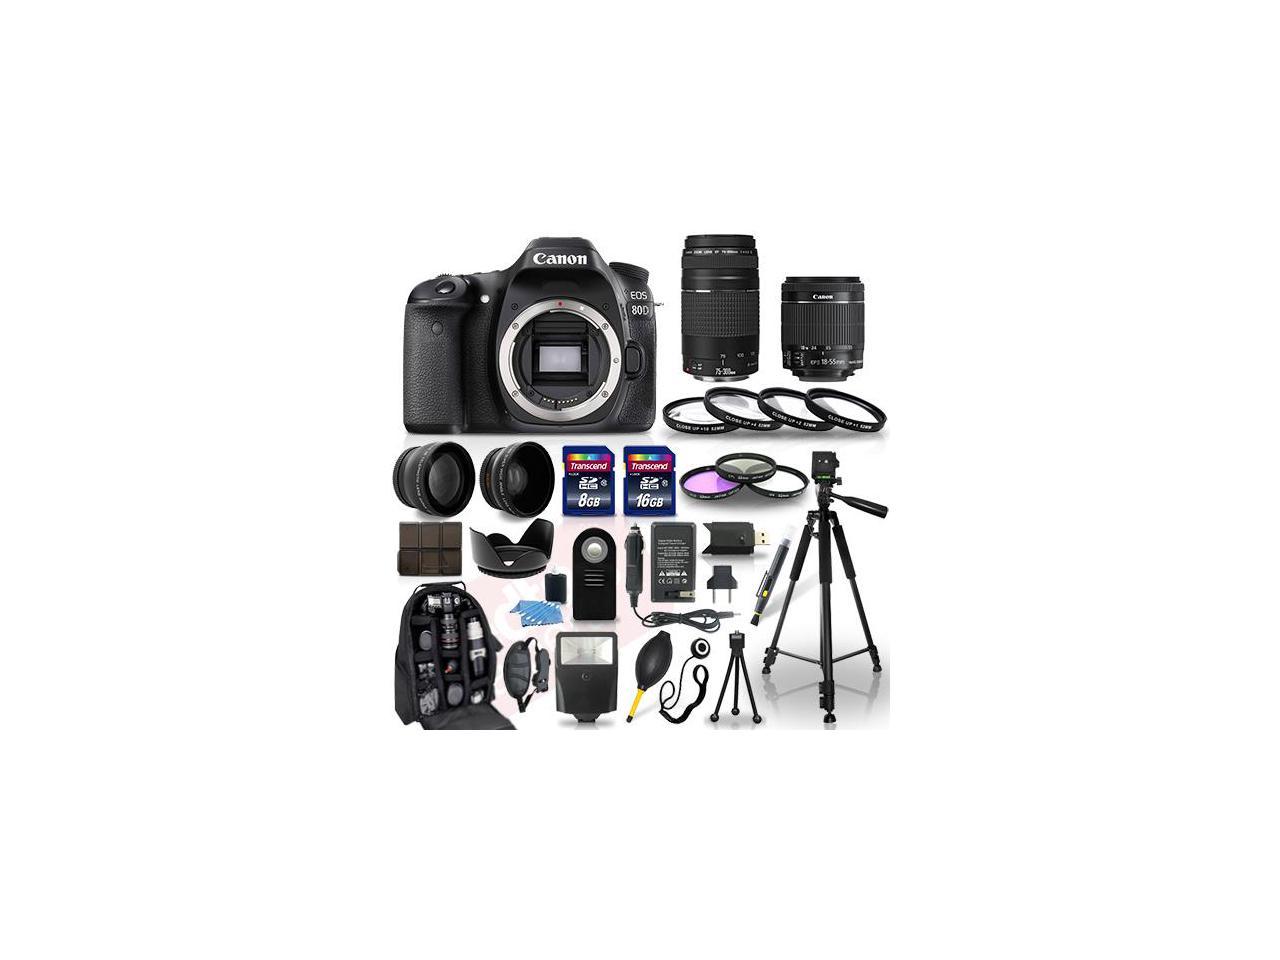 Canon EOS 80D Camera + 18-55mm stm + 75-300mm + 30 Piece Accessory Bundle